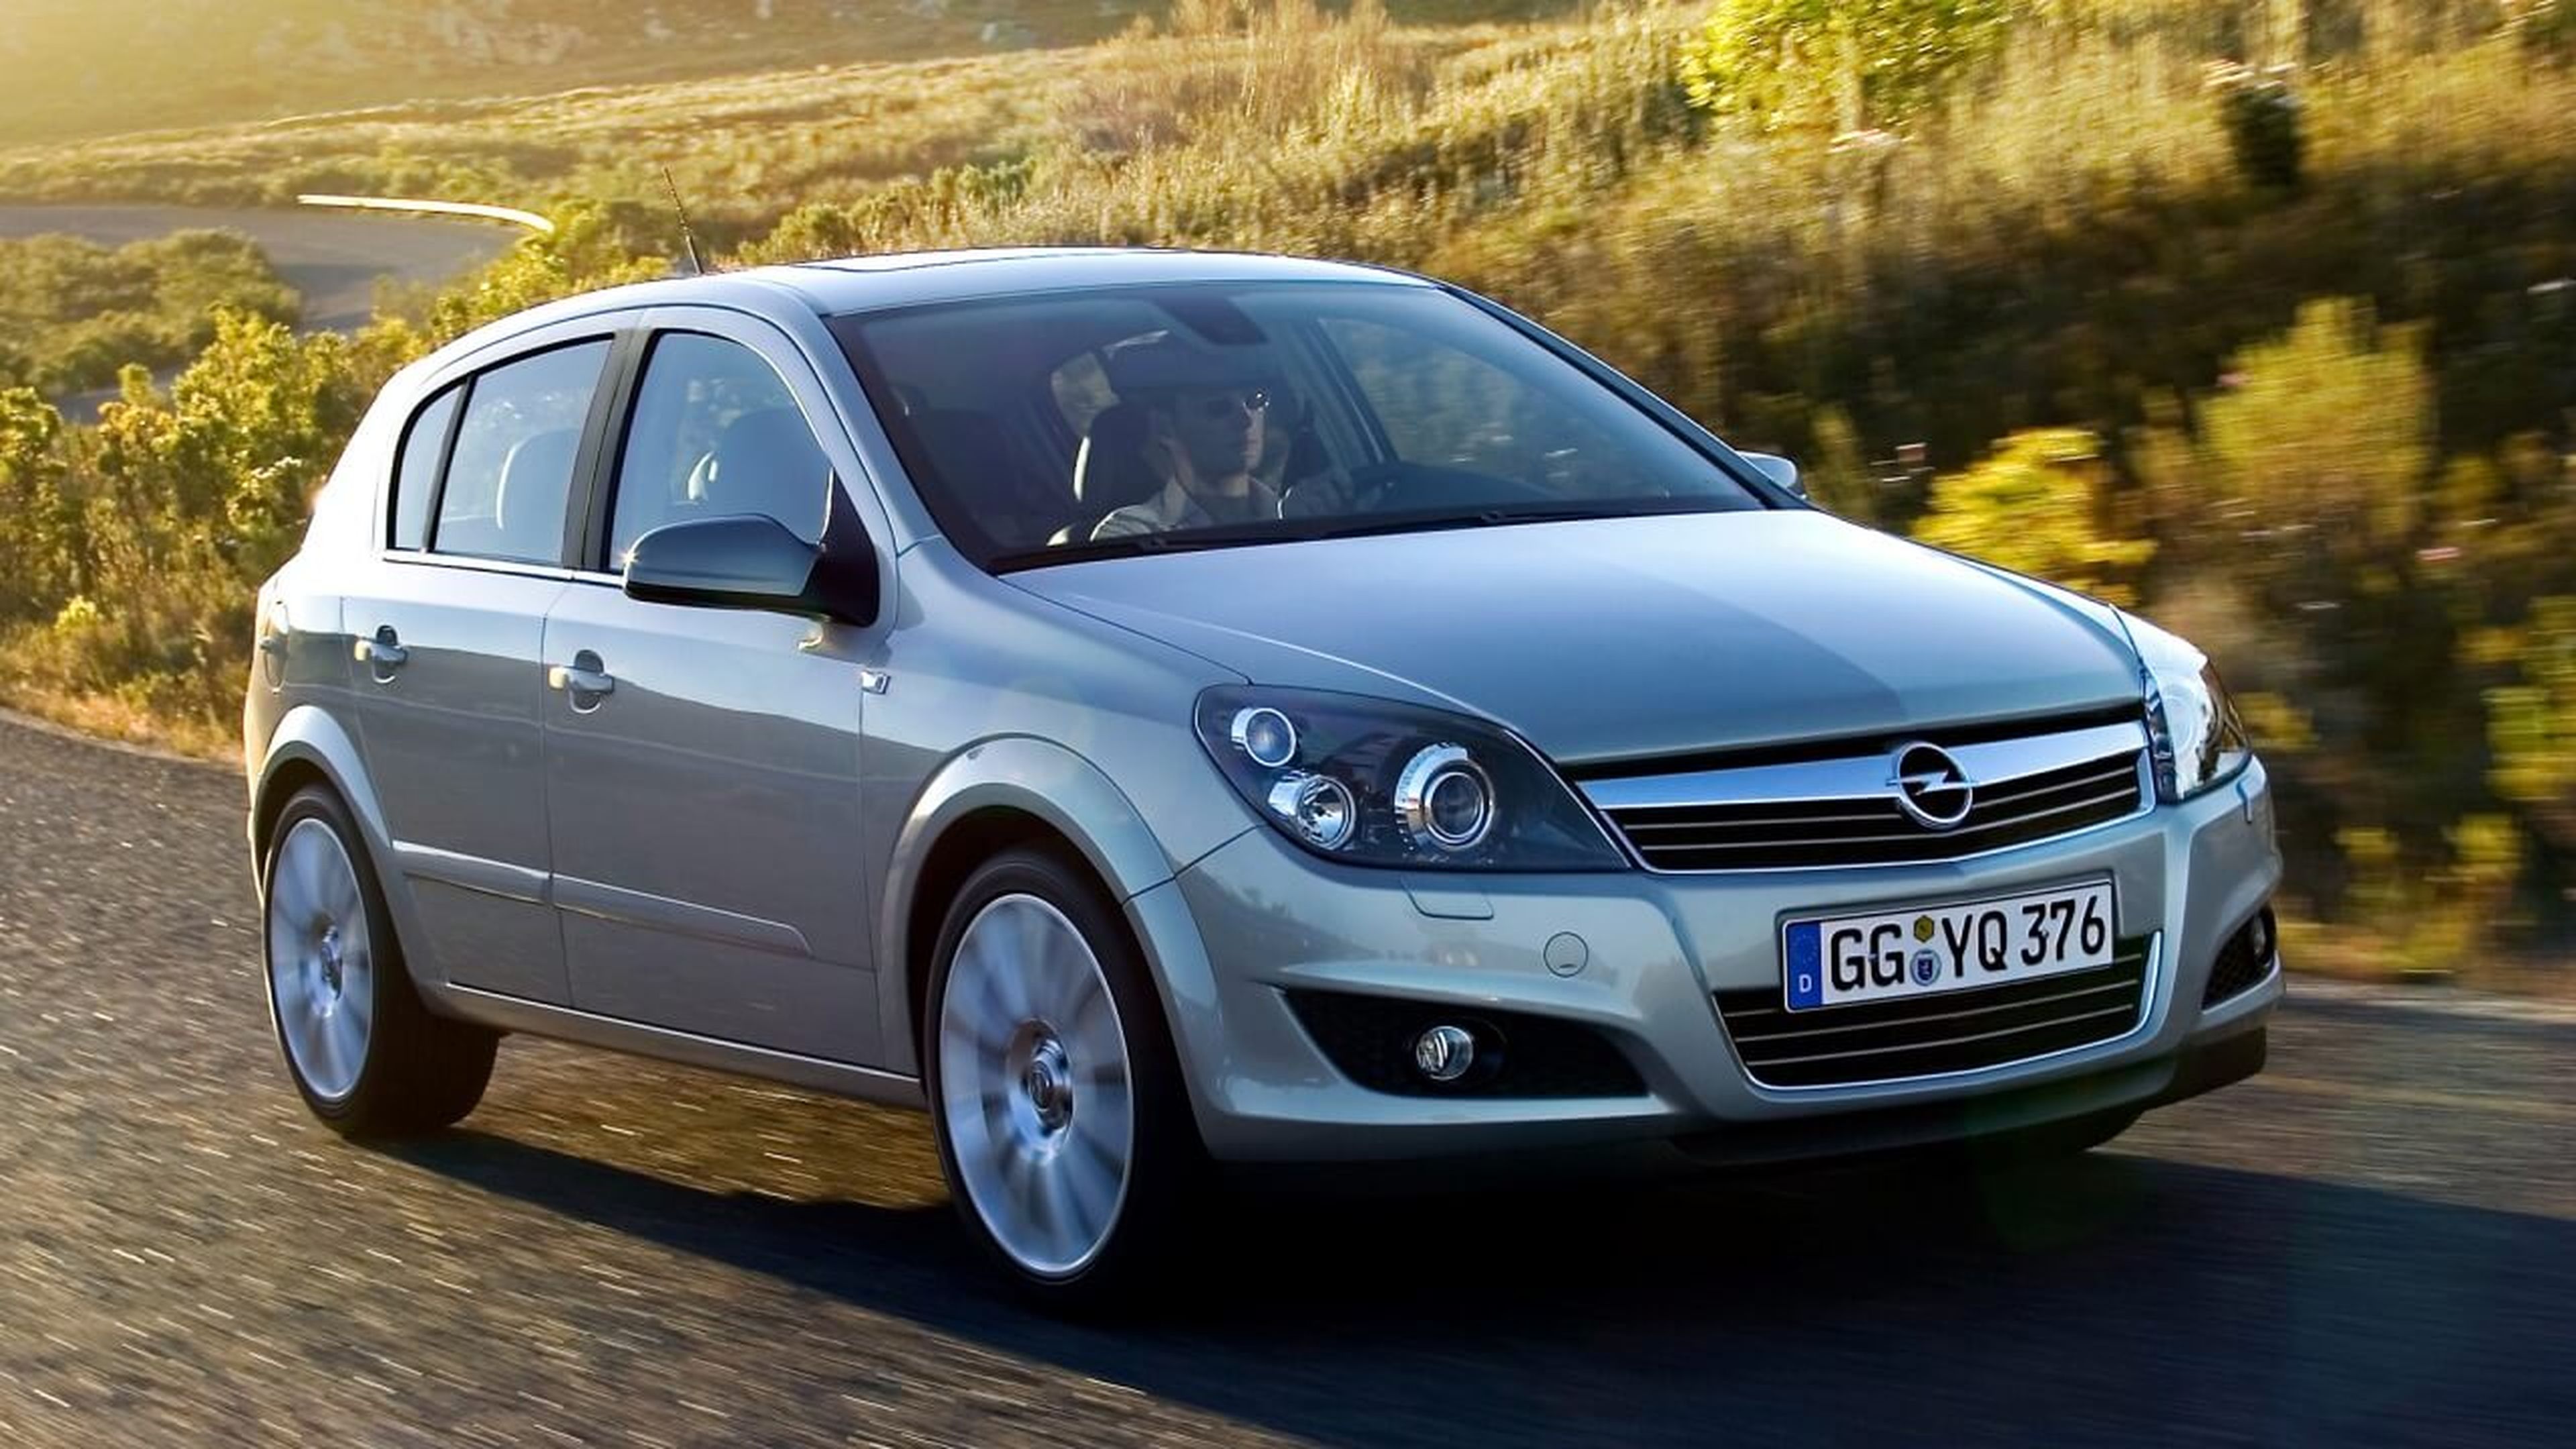 La historia del Opel Astra: 5 curiosidades que pocos conocen